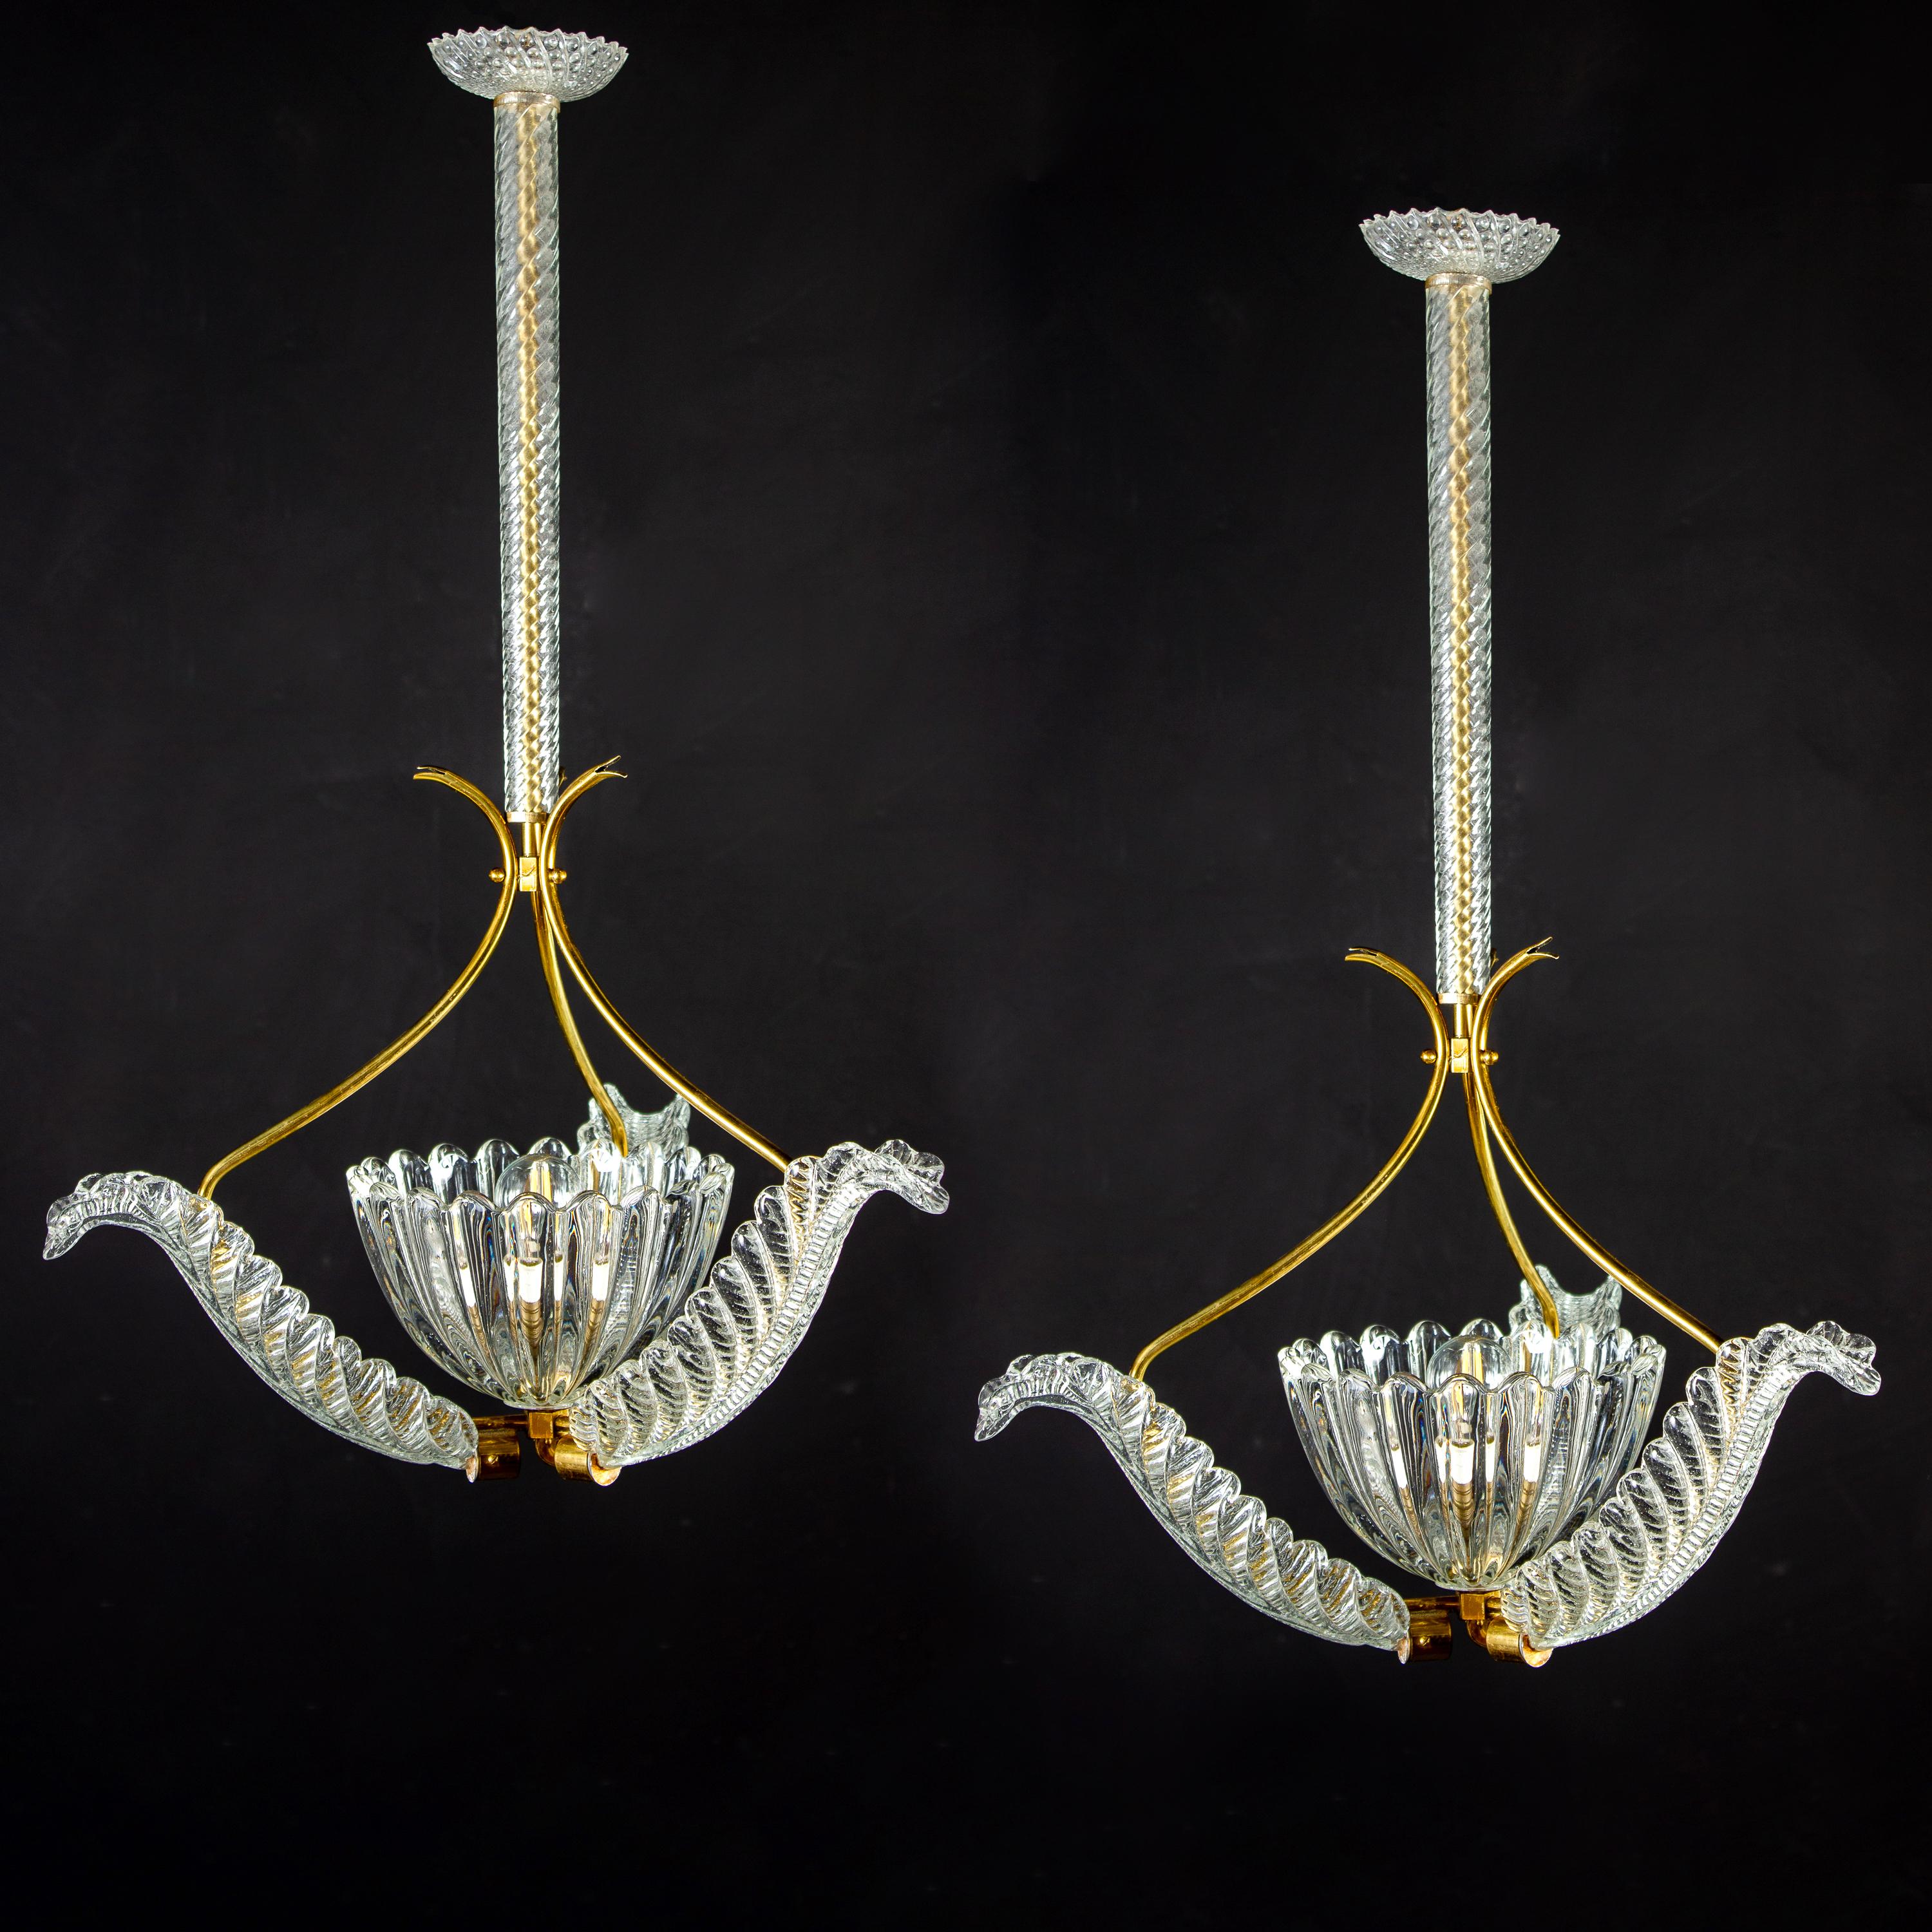 Elegantes Paar von Liberty-Anhängern aus Messing von Ercole Barovier, 1940er Jahre.
Jede mit drei kostbaren Muranoglasblättern, die von einem mundgeblasenen eleganten Becher zentriert werden.
Eine E27-Glühbirne, geeignet für internationale